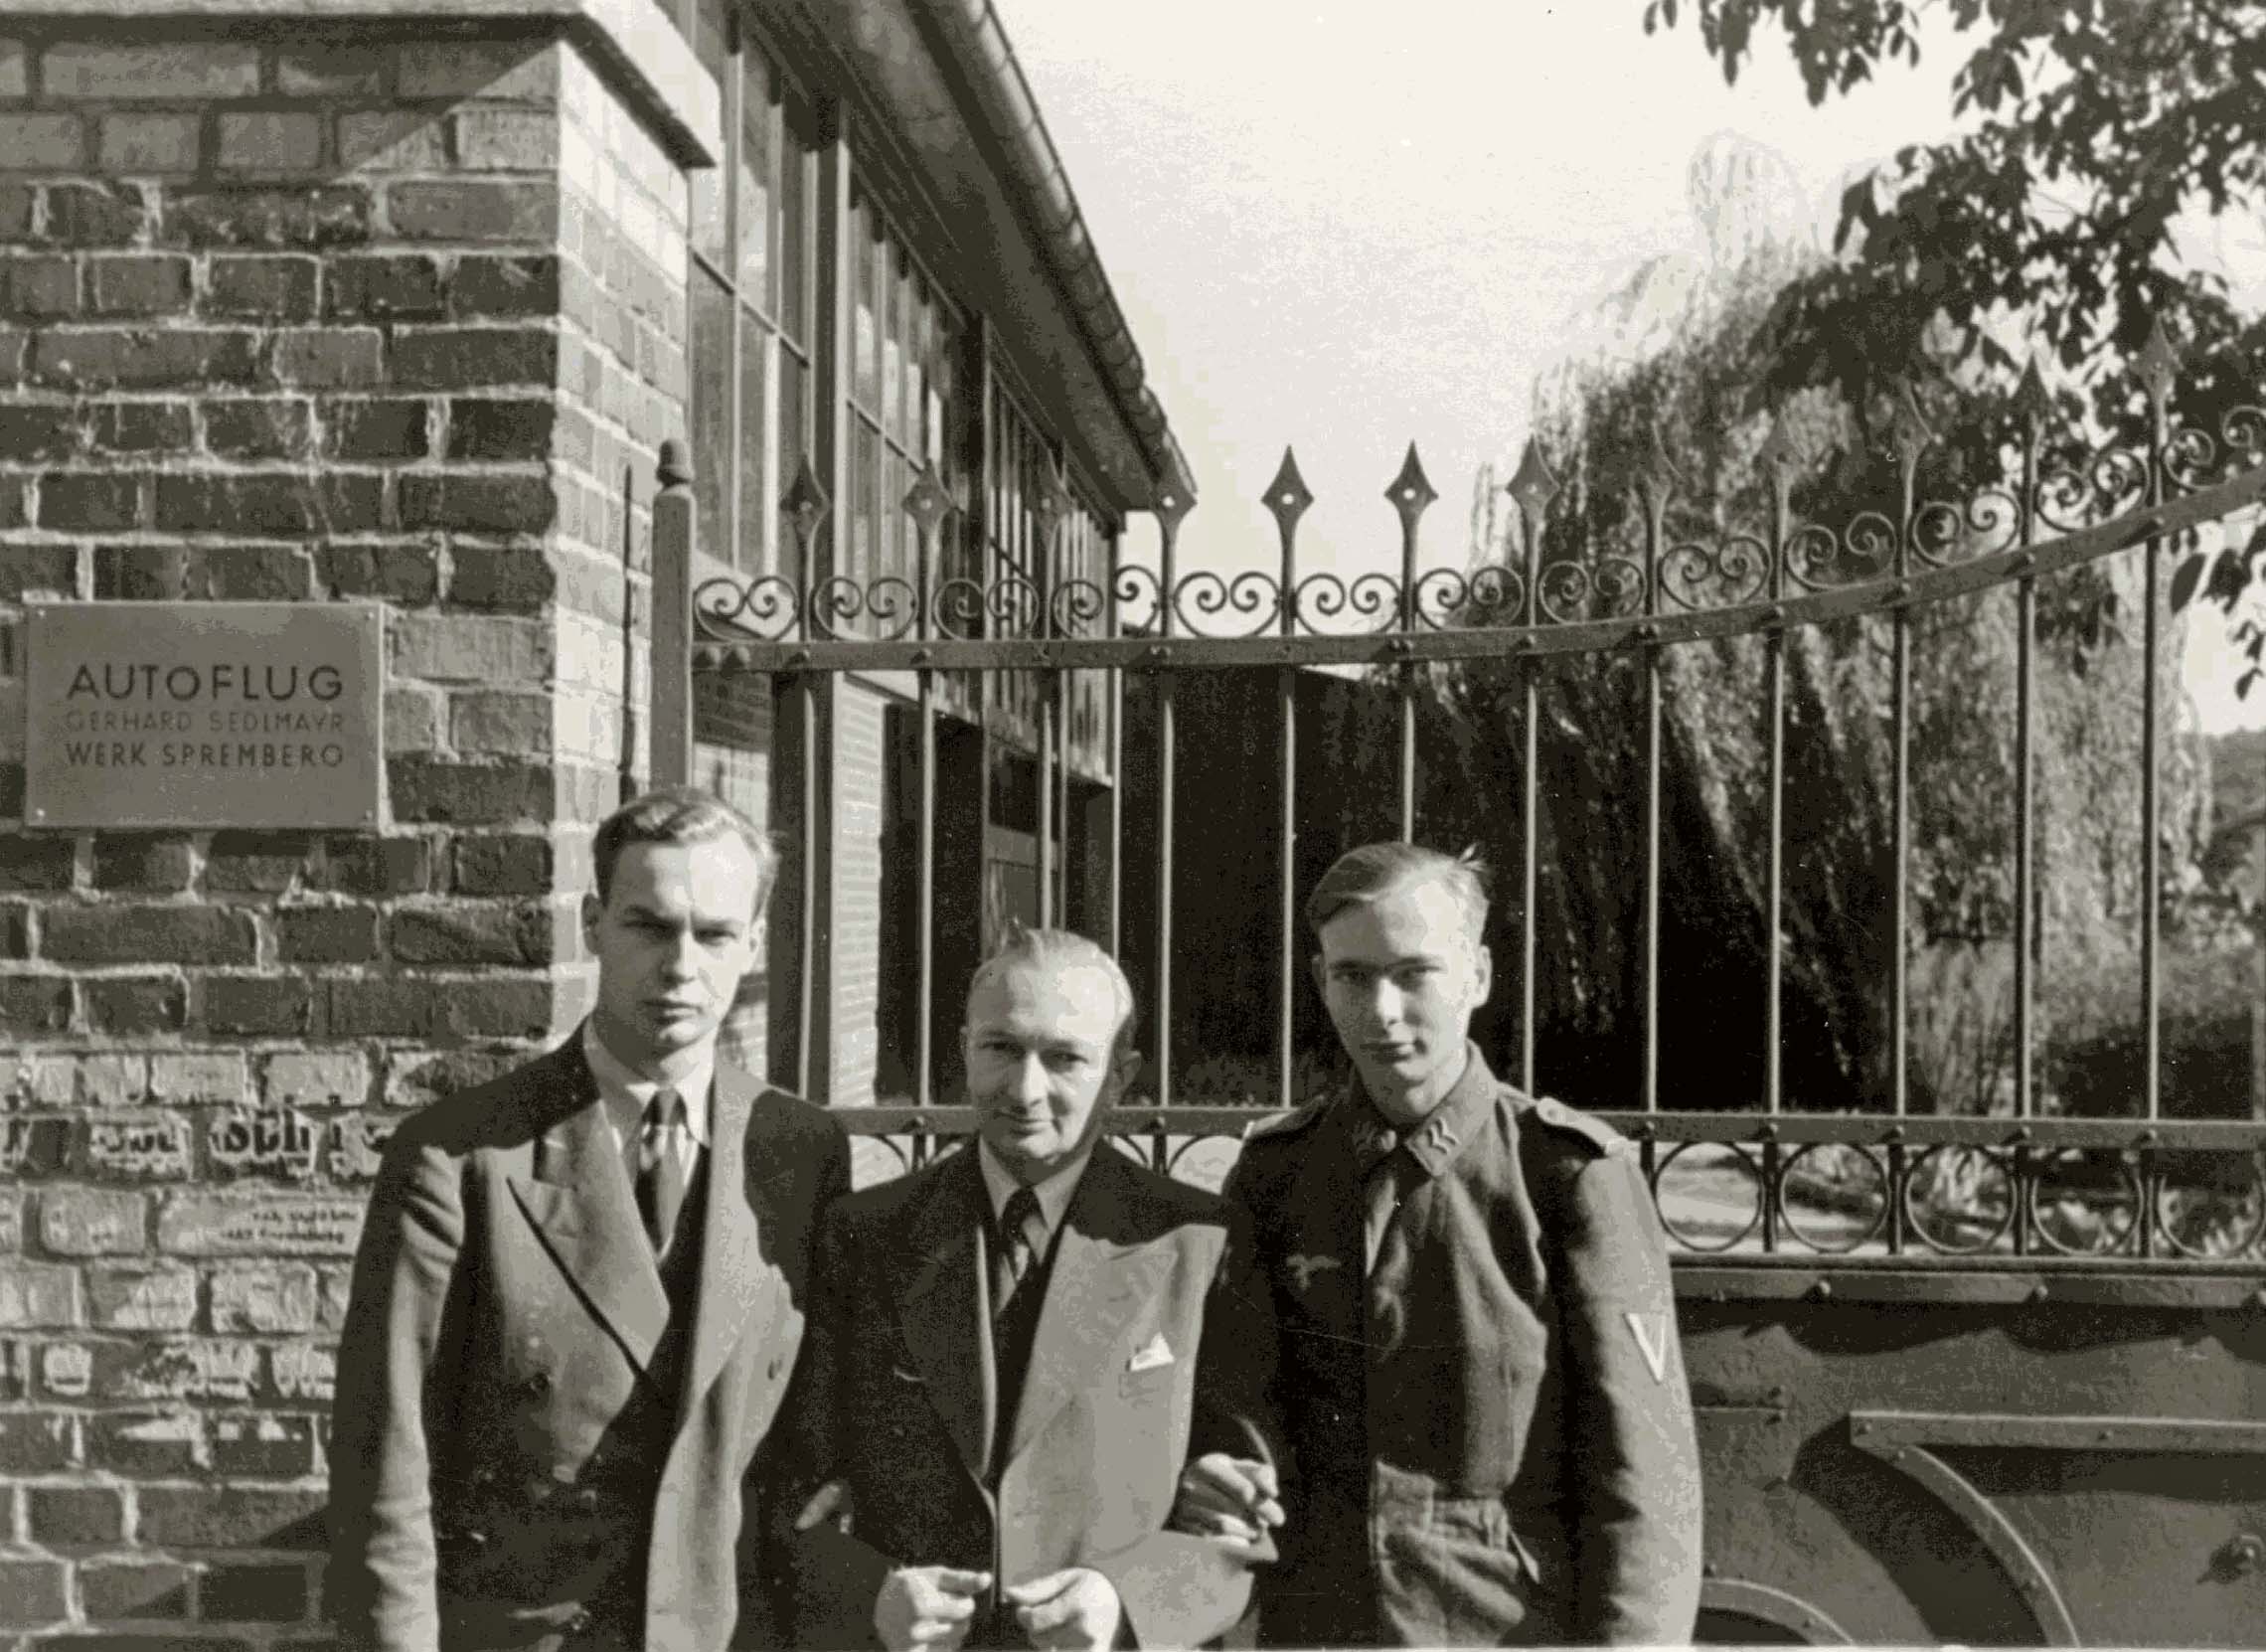 Gerhard Sedlmayr mit Shnen Joachim und Gerhard 1943 - Bild: Firma Autopflug GmbH